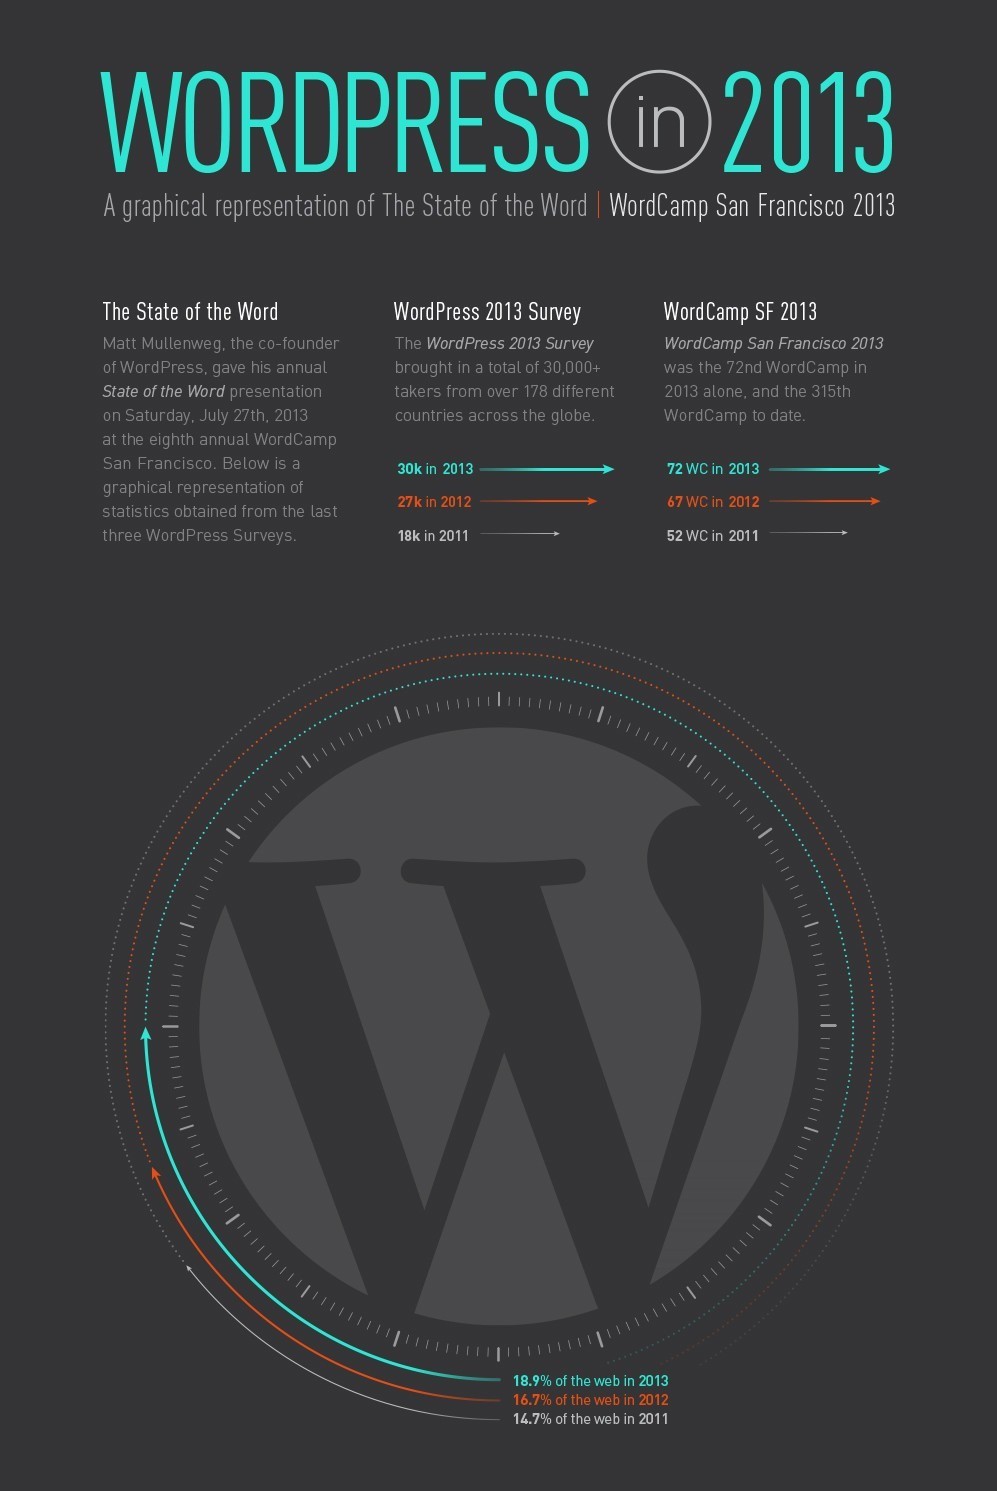 wordpress infographic 2013 e1377090739690 - WordPress Infographic 2013